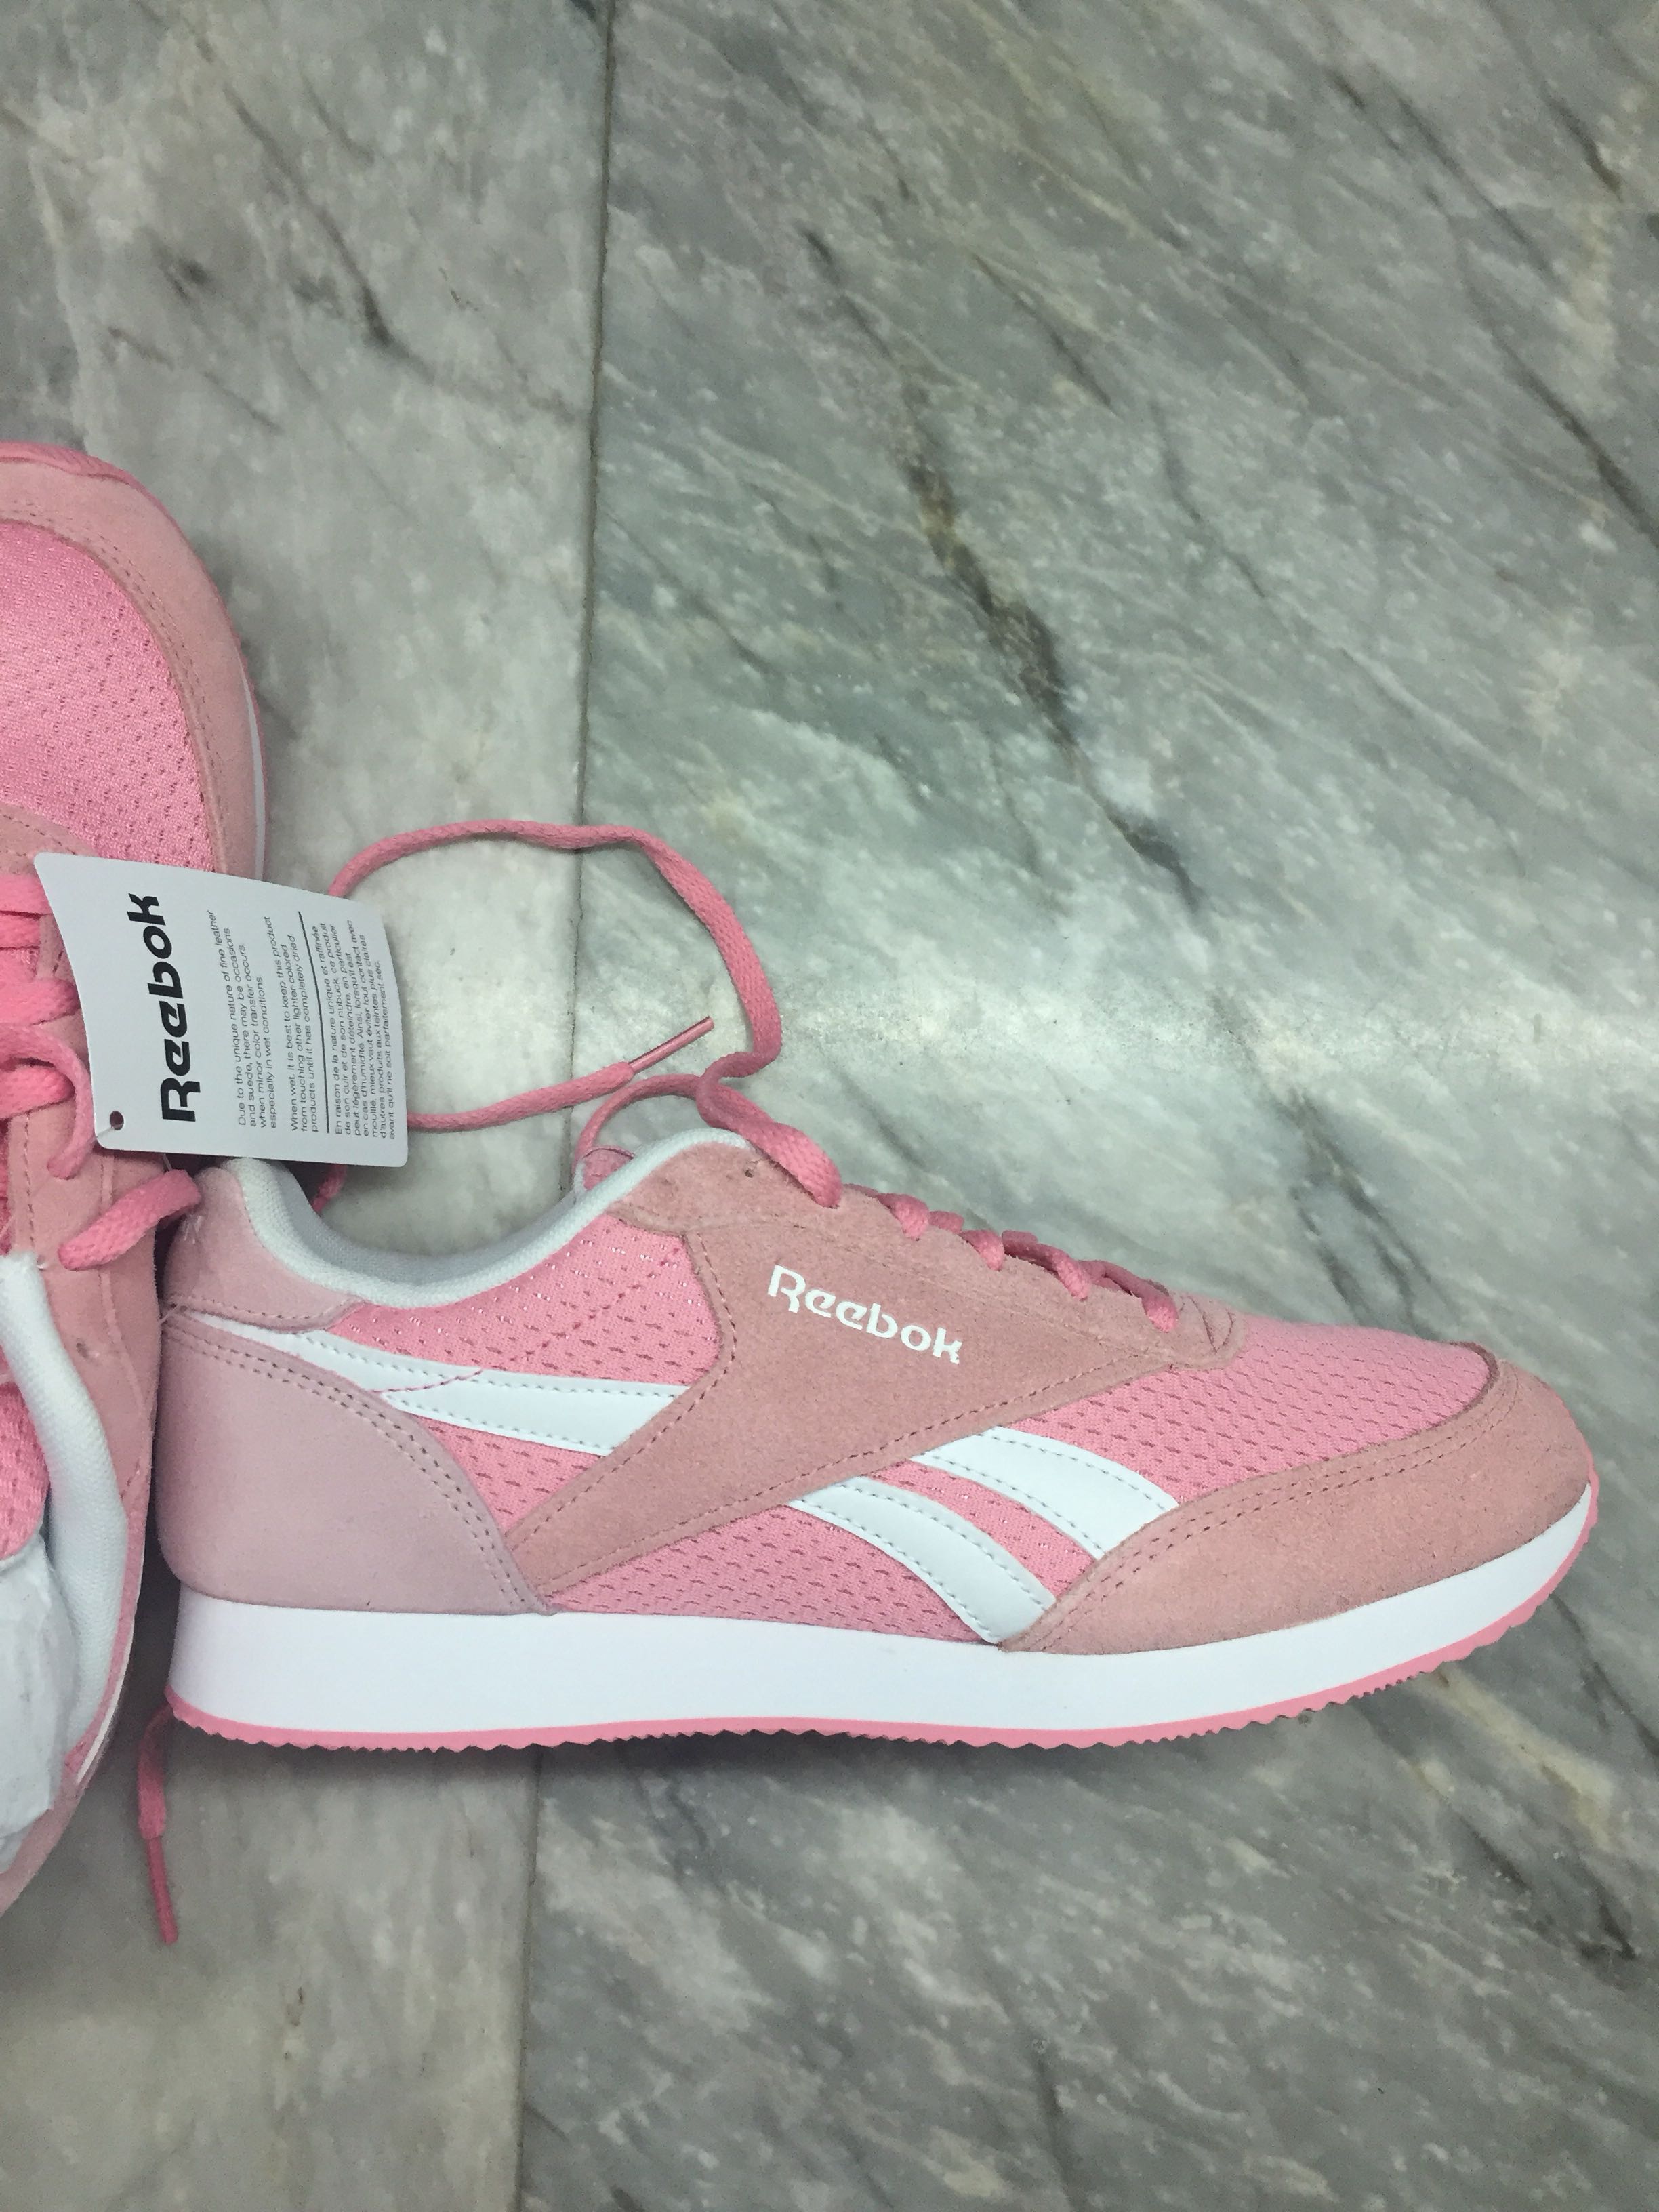 reebok pastel pink shoes